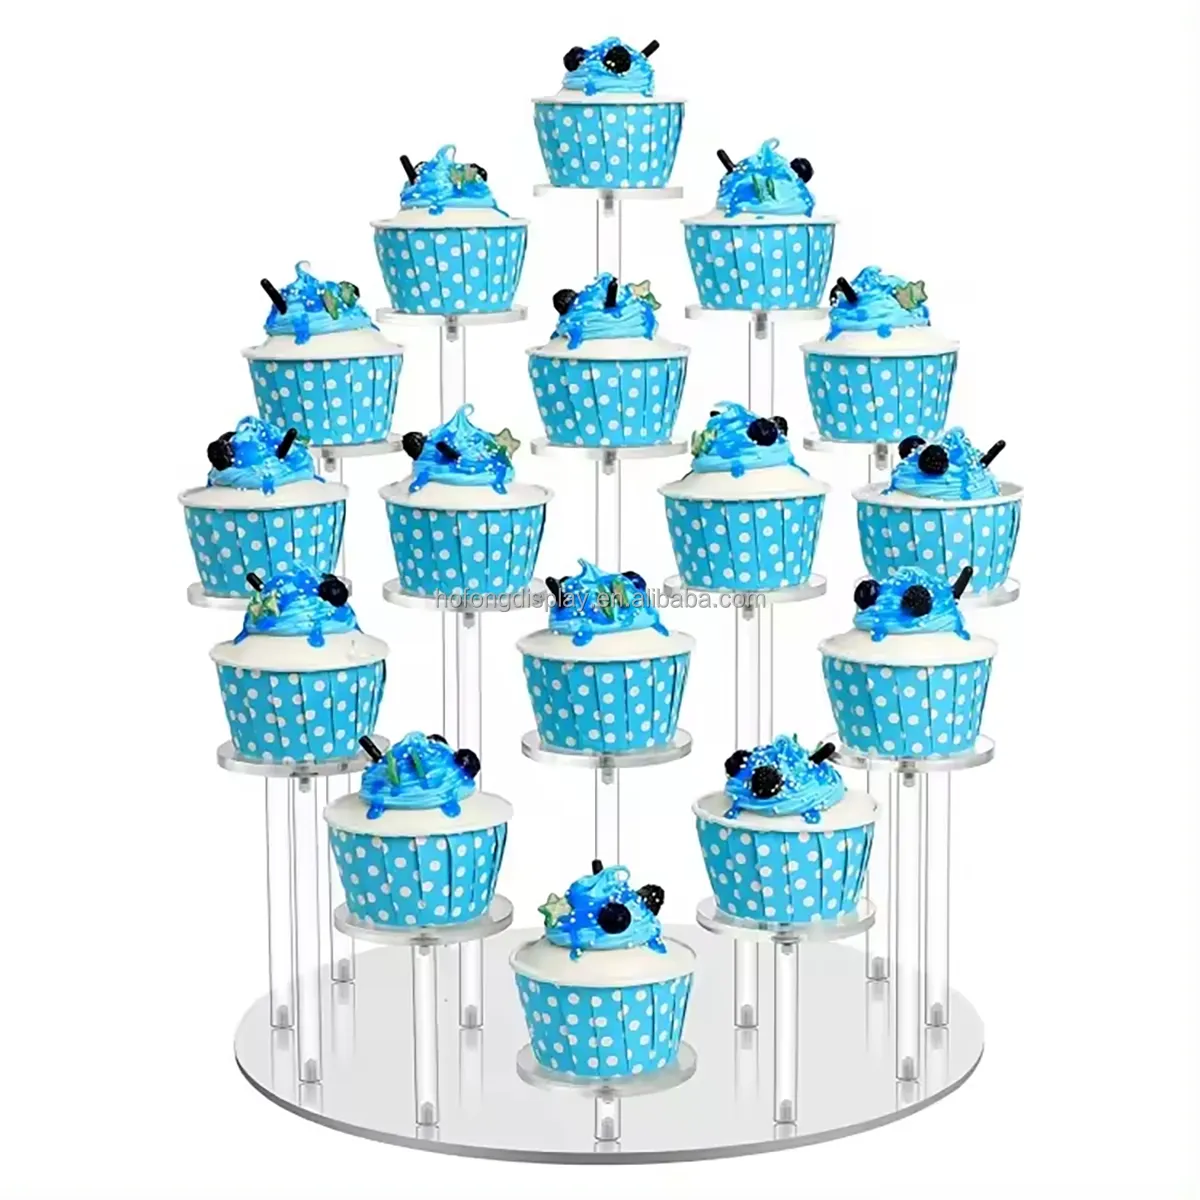 Suporte de acrílico para pastelaria e cupcake, suporte de sobremesa com 16 unidades, para festas, casamentos, aniversários, feriados e natal